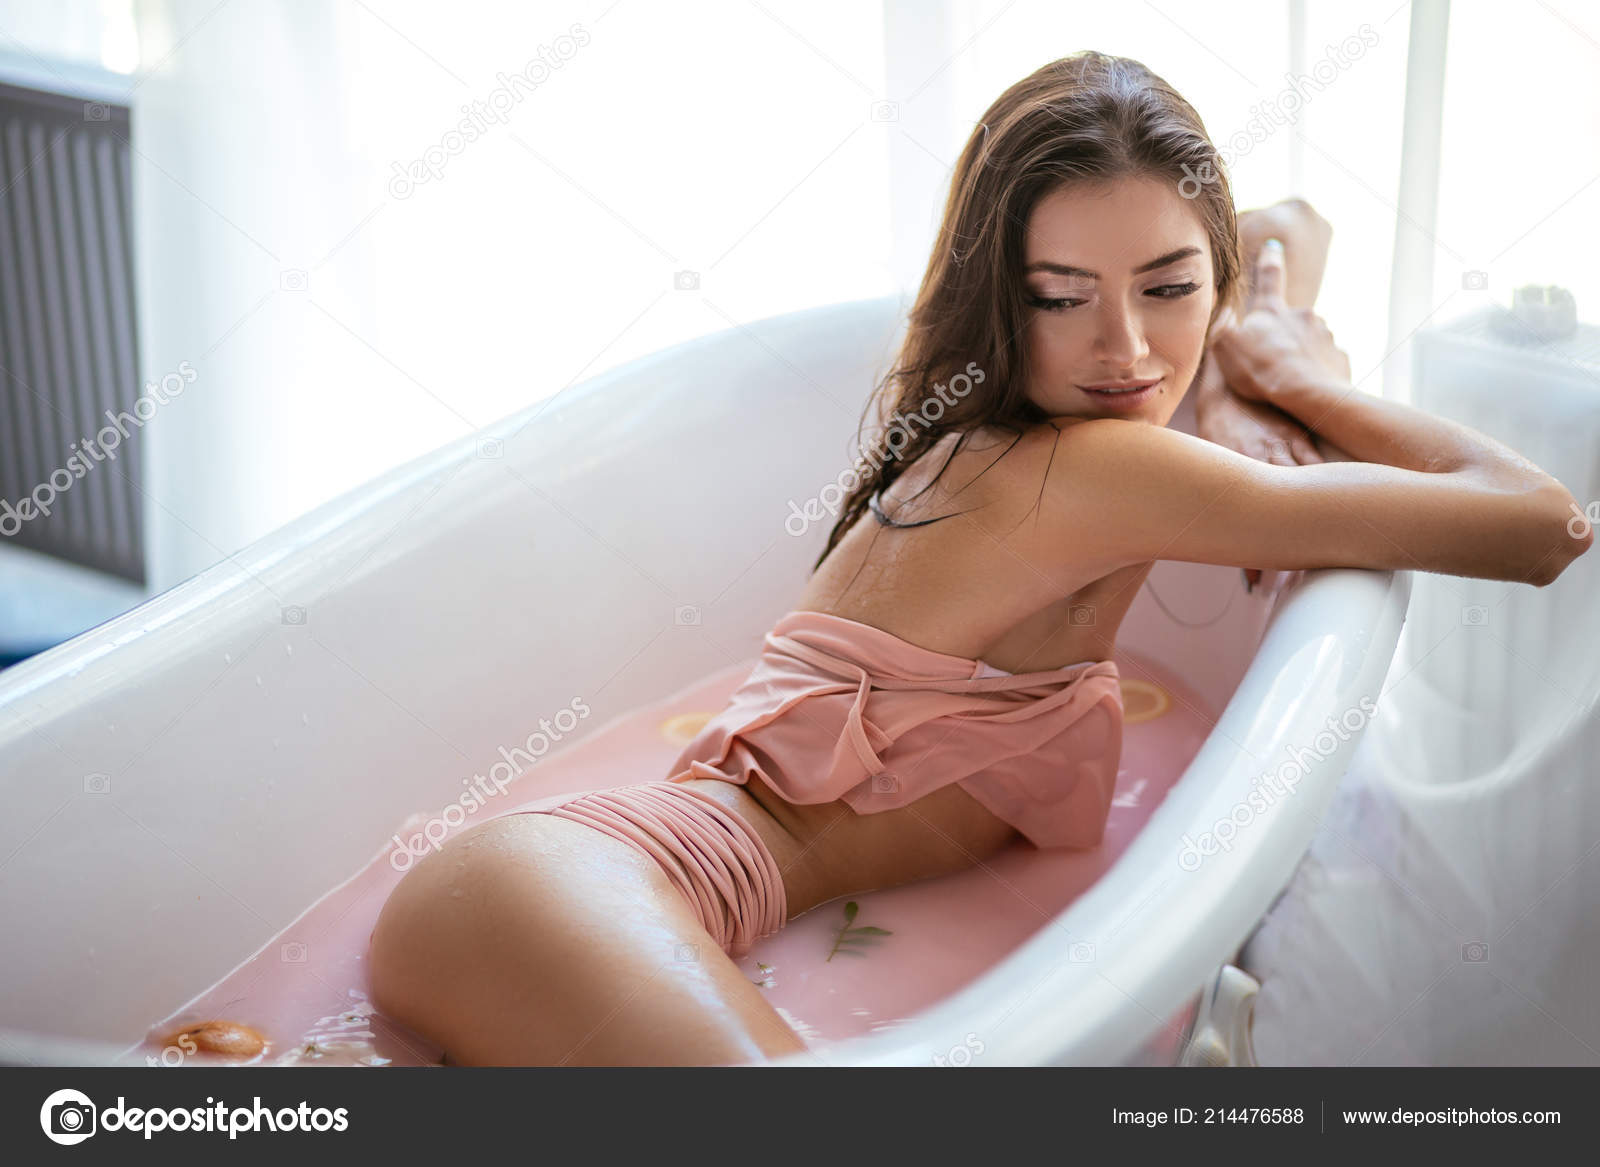 Woman relaxing in milky bath in spa resort